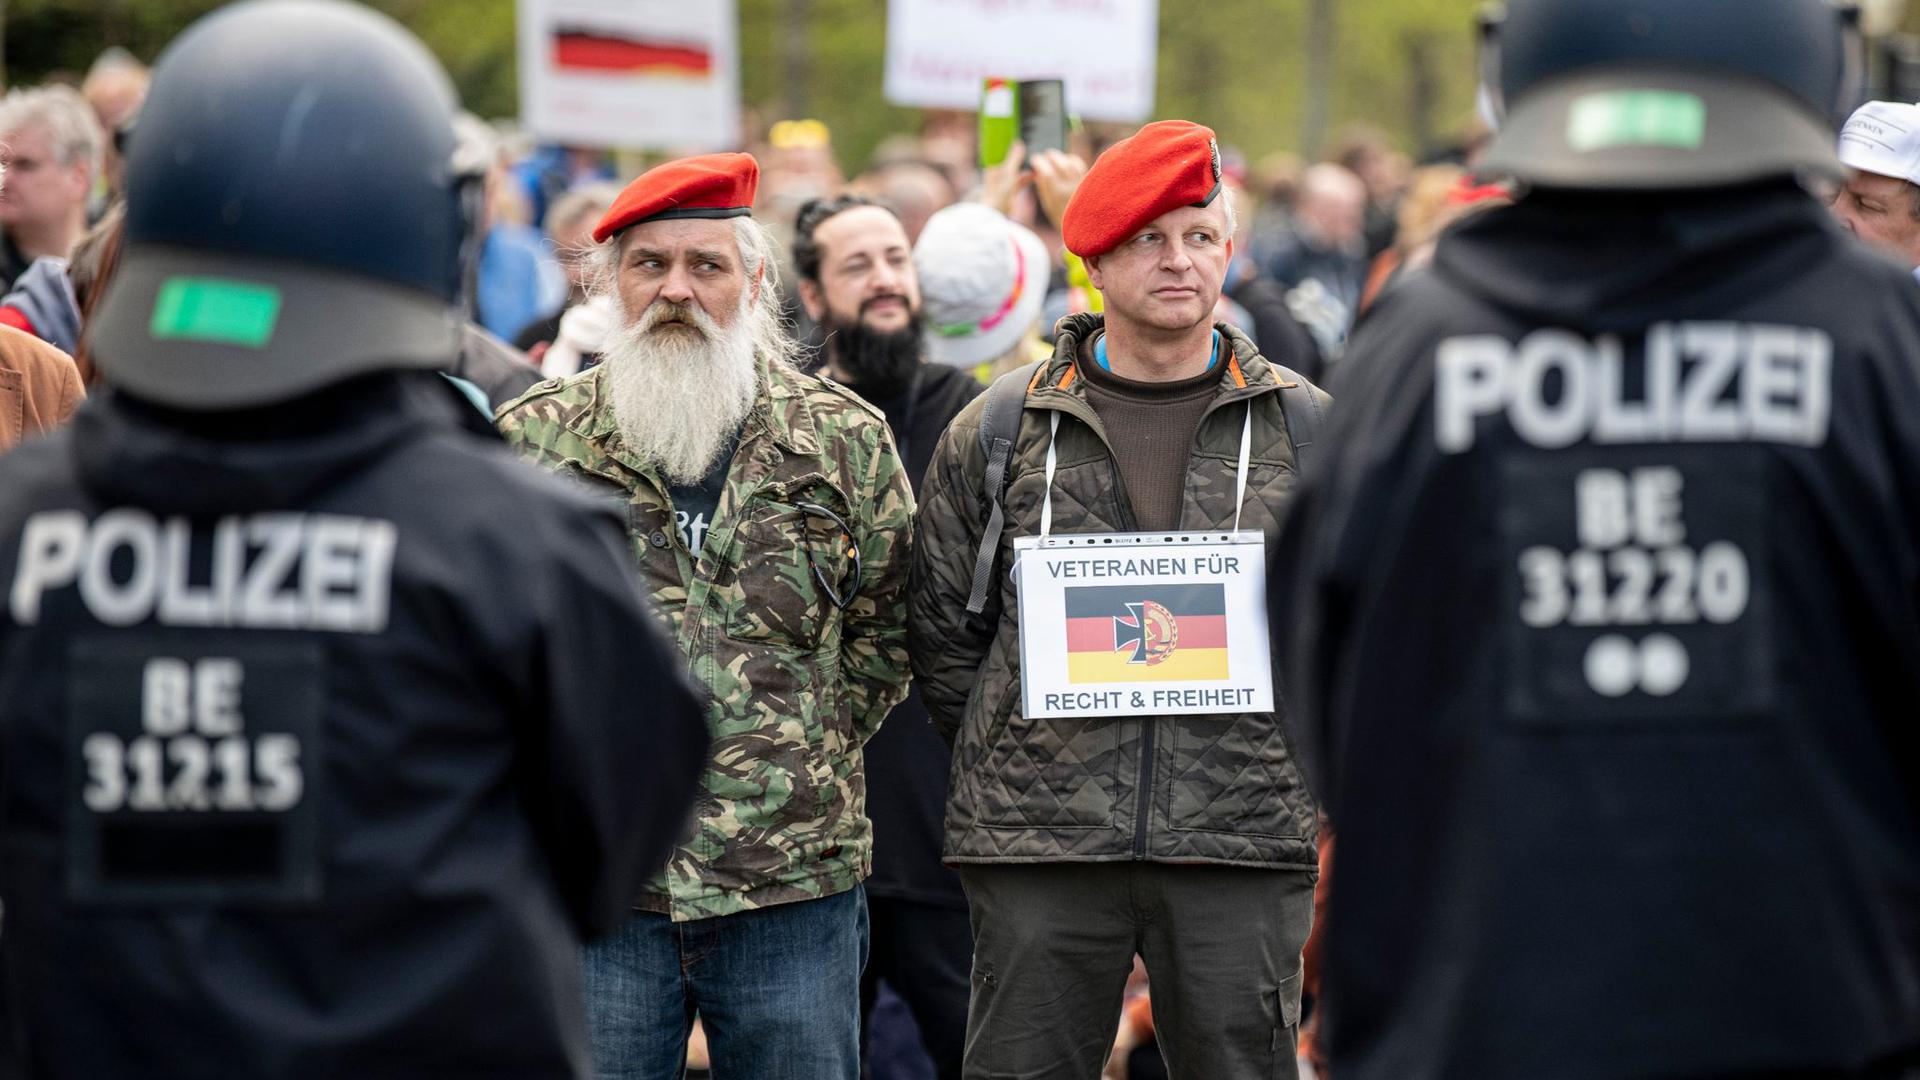 Zwei Demonstranten stehen mit einem Schild - „Veteranen für Recht und Freiheit“ - auf der Straße des 17. Juni in Berlin.